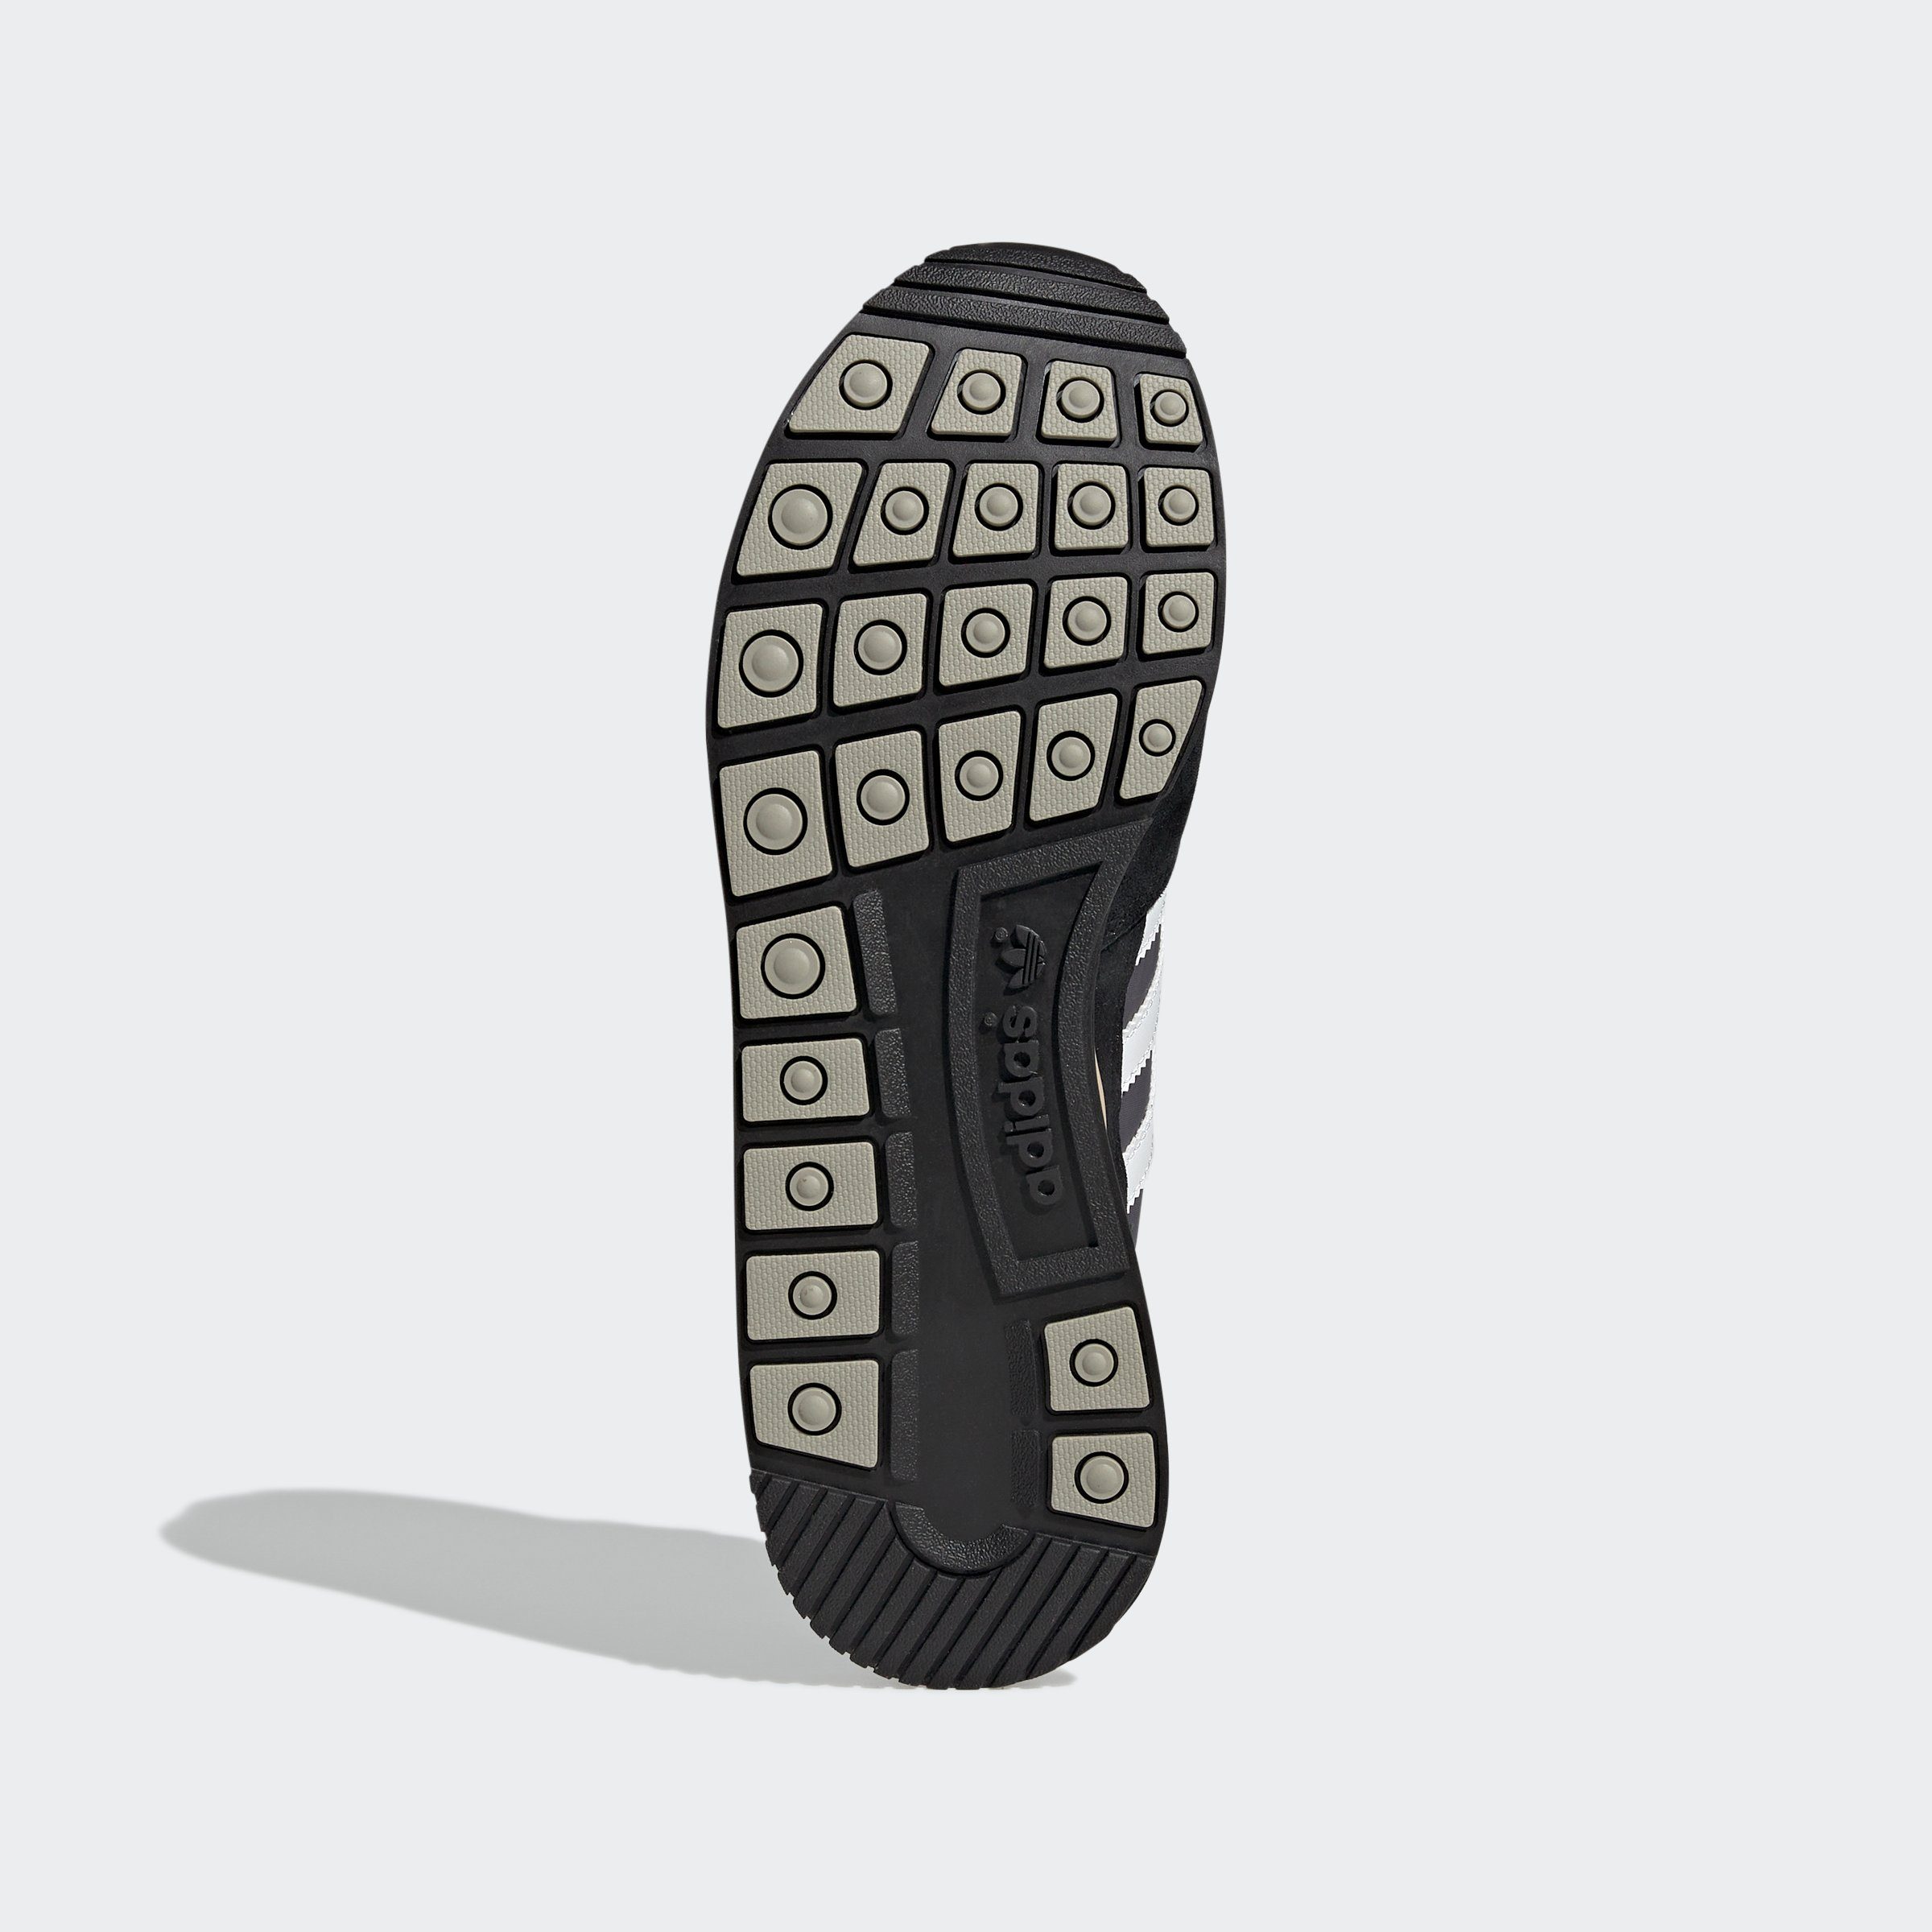 Sneaker CBLACK-CBLACK-ALMPNK Originals adidas ZX 500